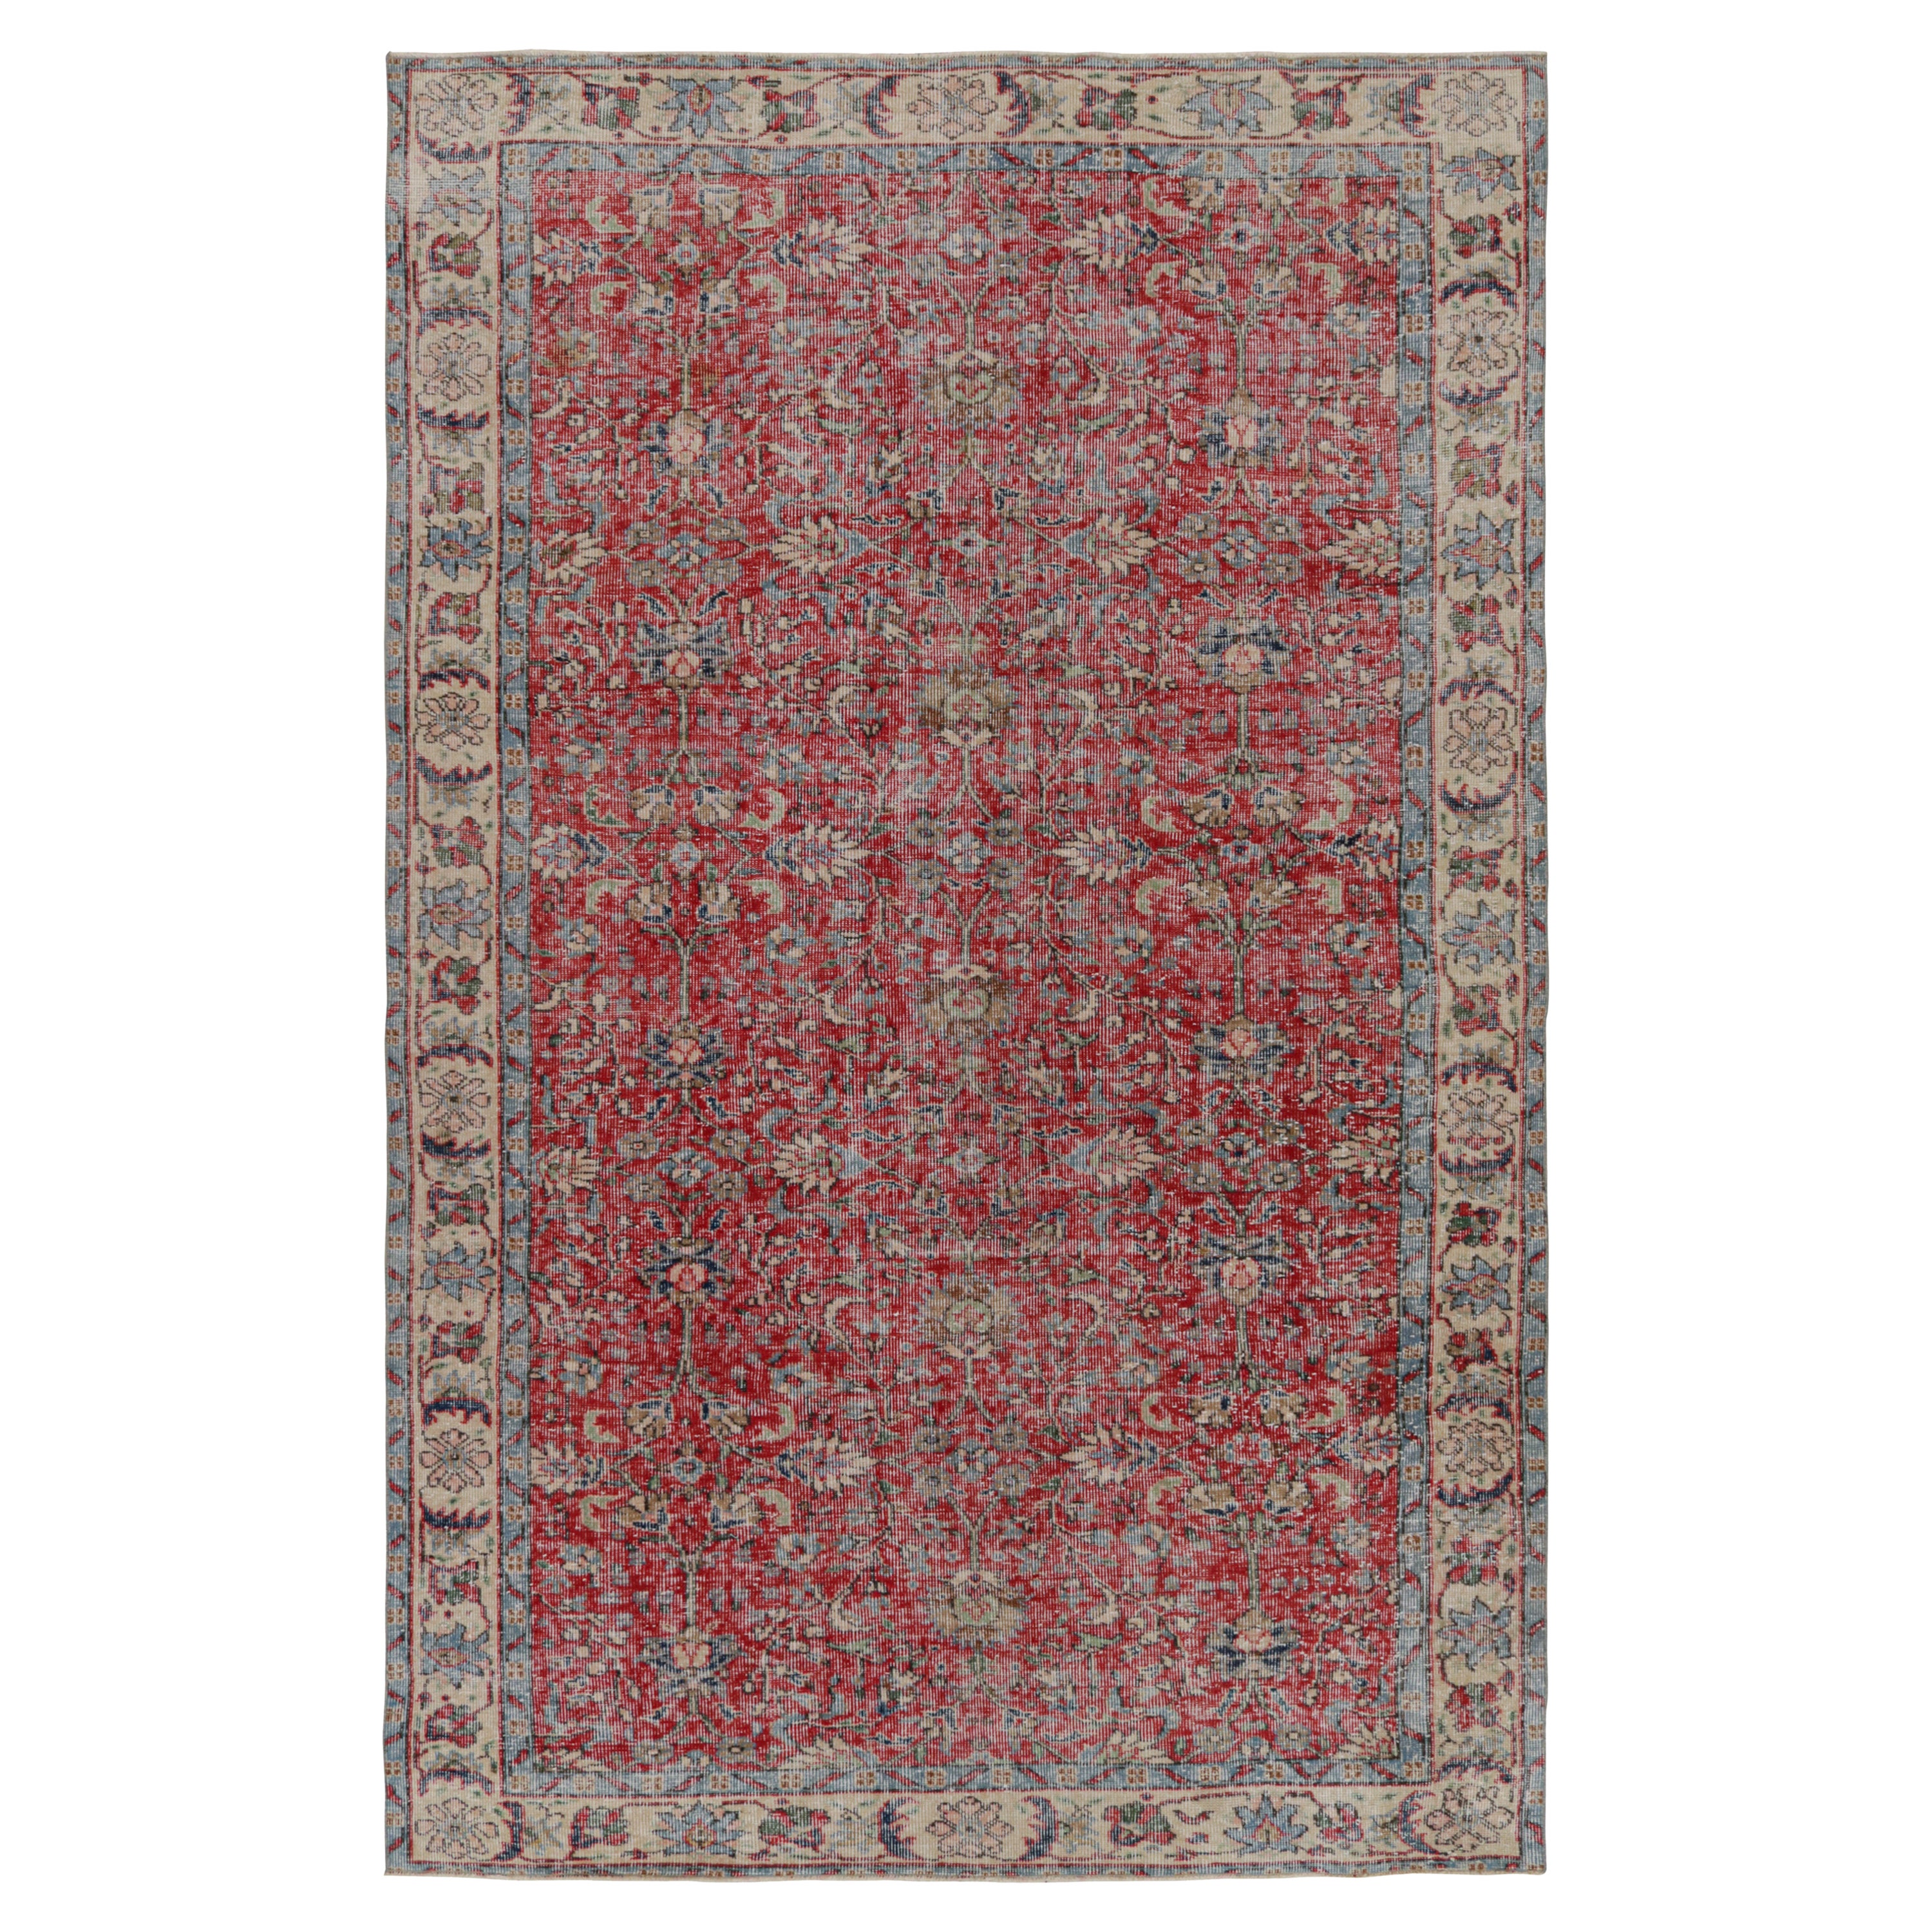 Türkischer Vintage-Teppich in Rot mit floralen Mustern, von Rug & Kilim